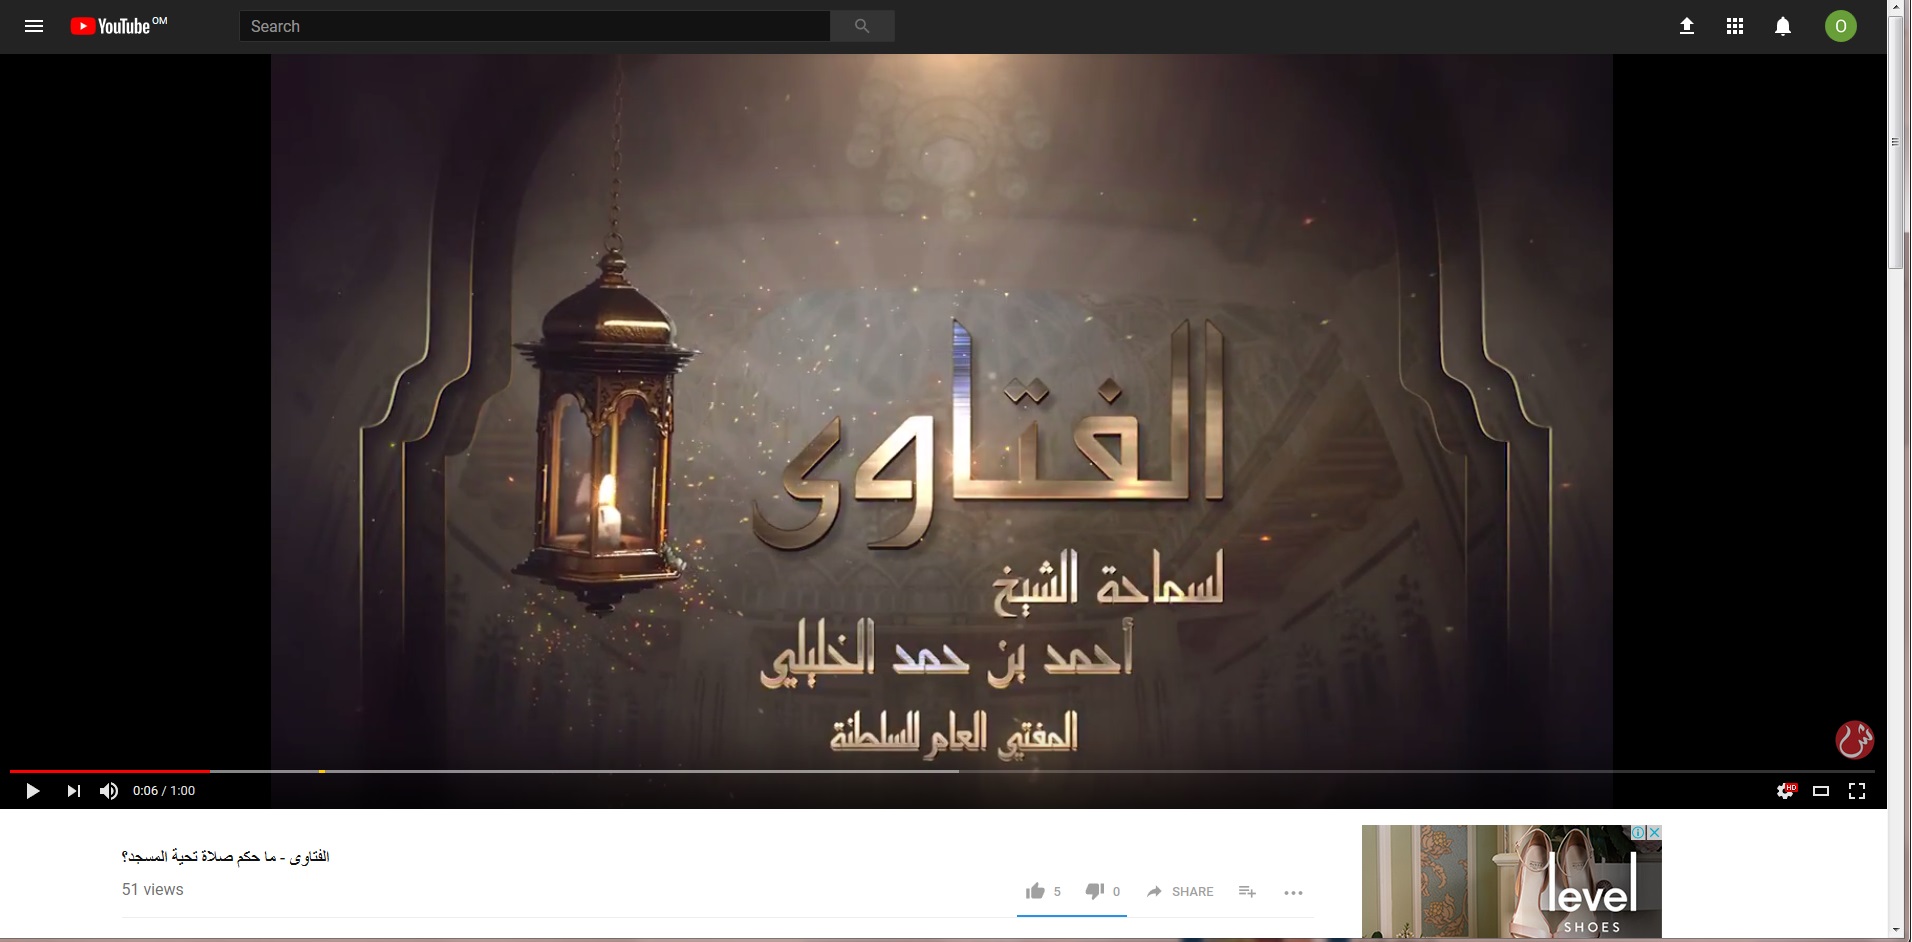 بالفيديو: الخليلي يوضح حكم صلاة تحية المسجد